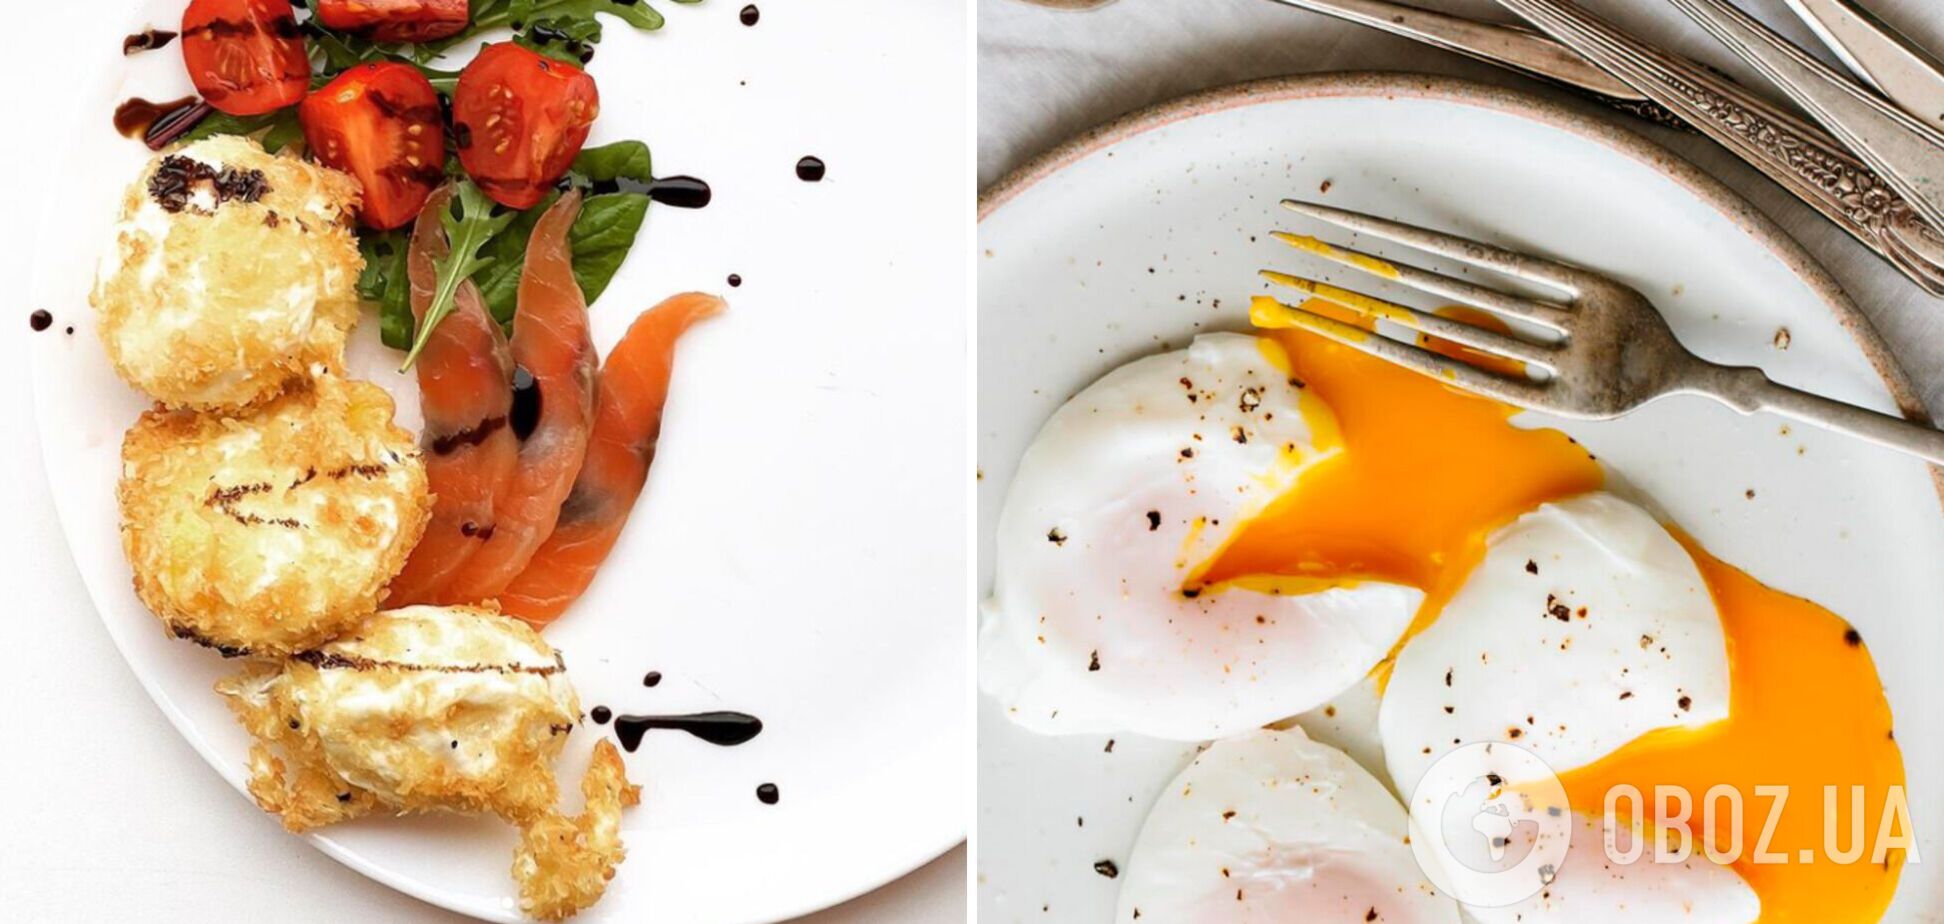 Изысканное яйцо пашот в кляре: как приготовить популярный завтрак